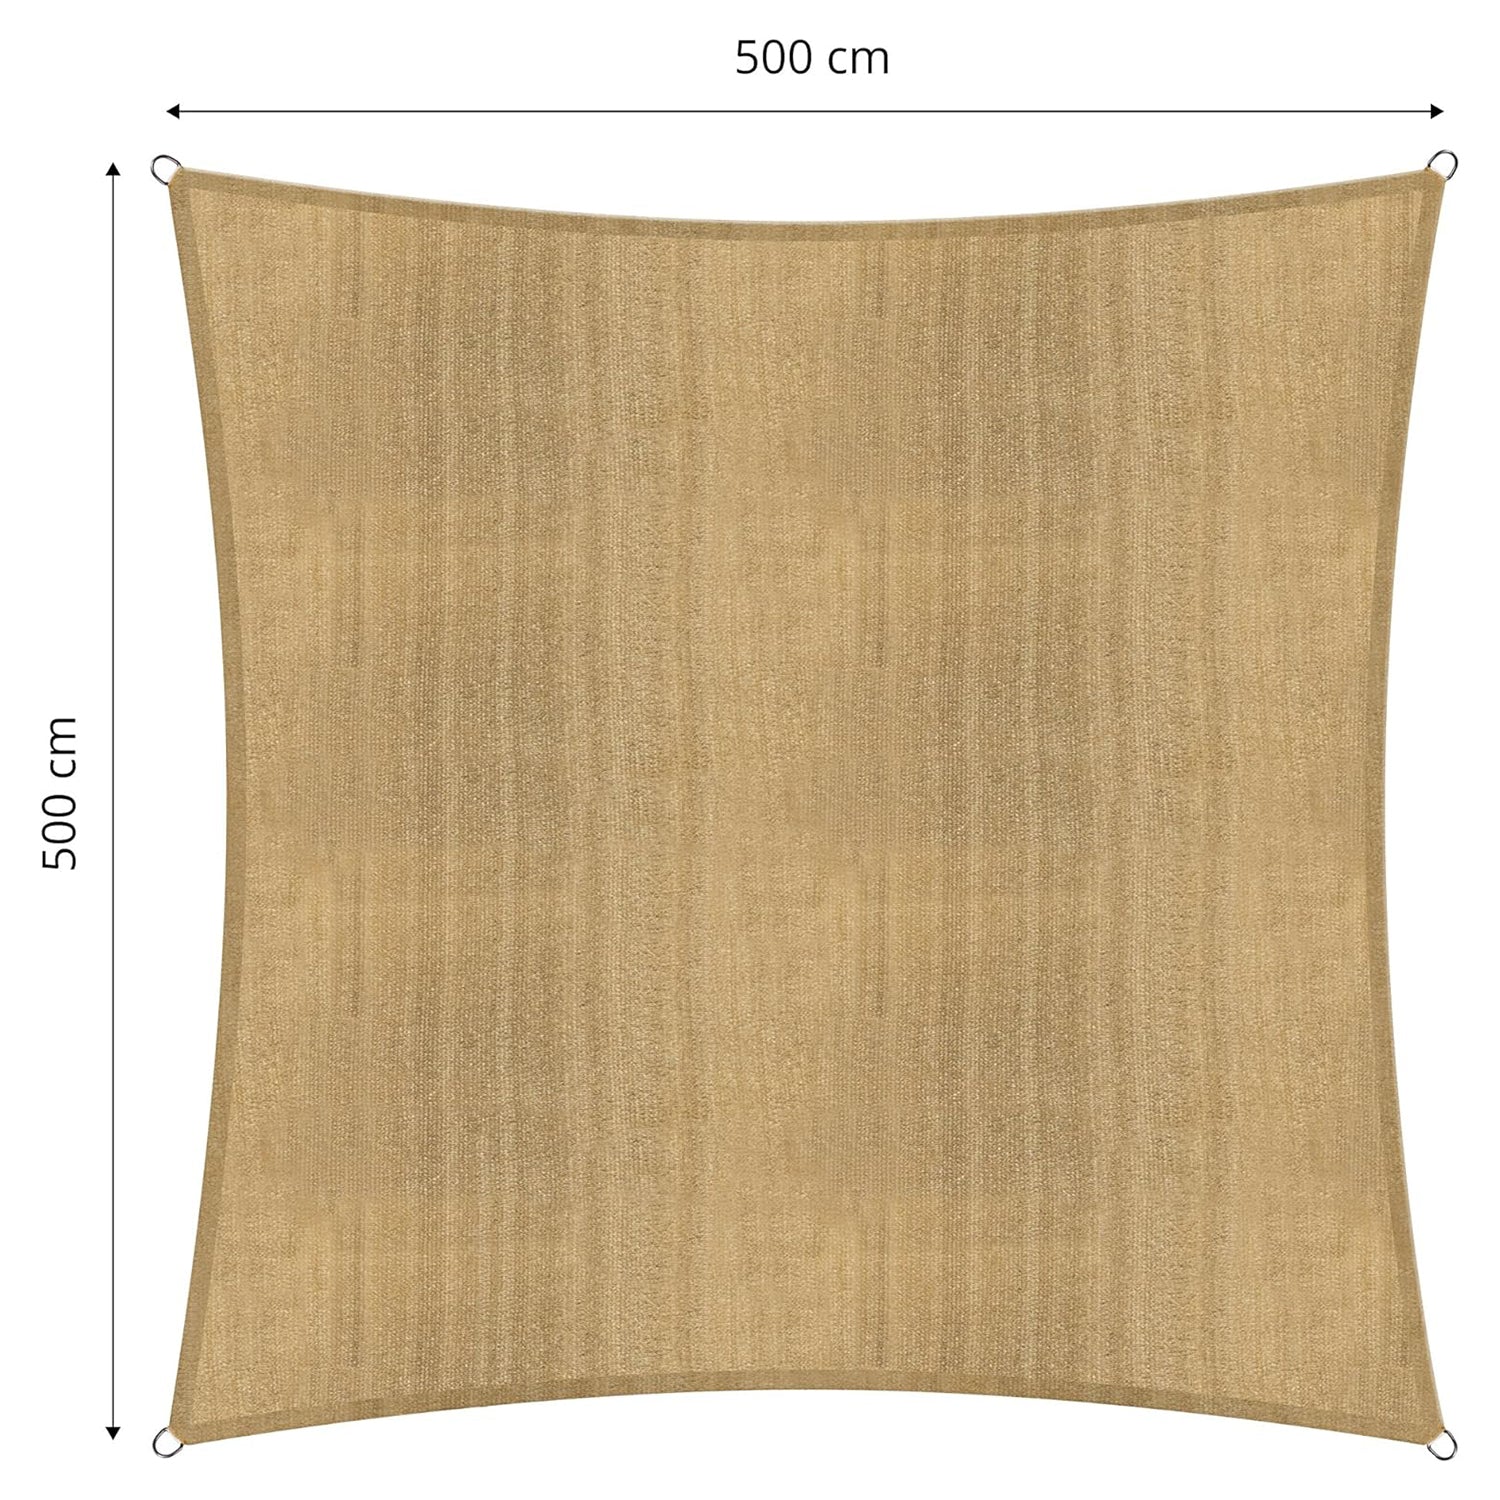 Sonnensegel 100% HDPE mit Stabilisator für UV-Schutz - Quadrat 5 x 5 Meter - Sand